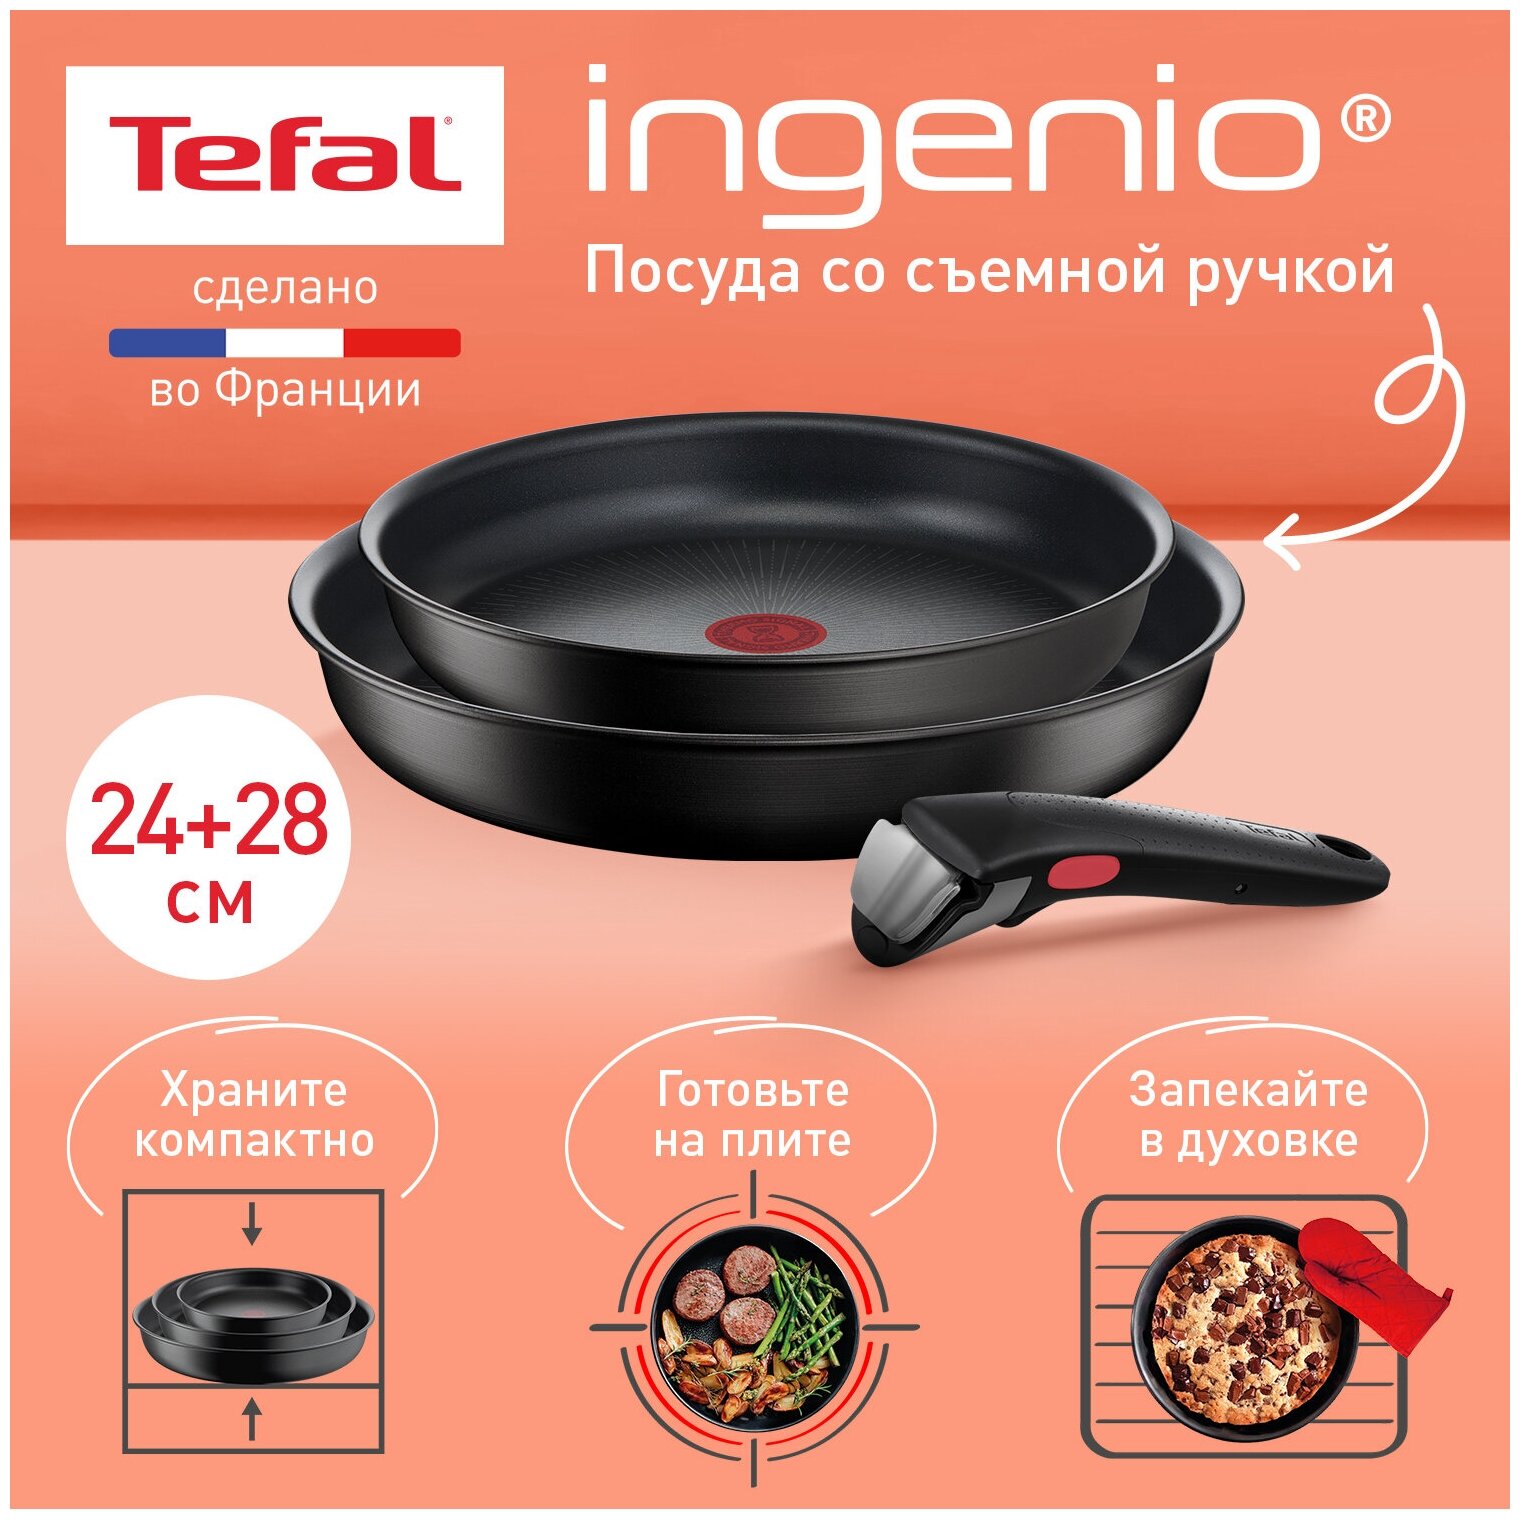 Набор посуды со съемной ручкой Tefal Ingenio Unlimited L7638942 3 предмета, 24/28 см, подходит для индукции